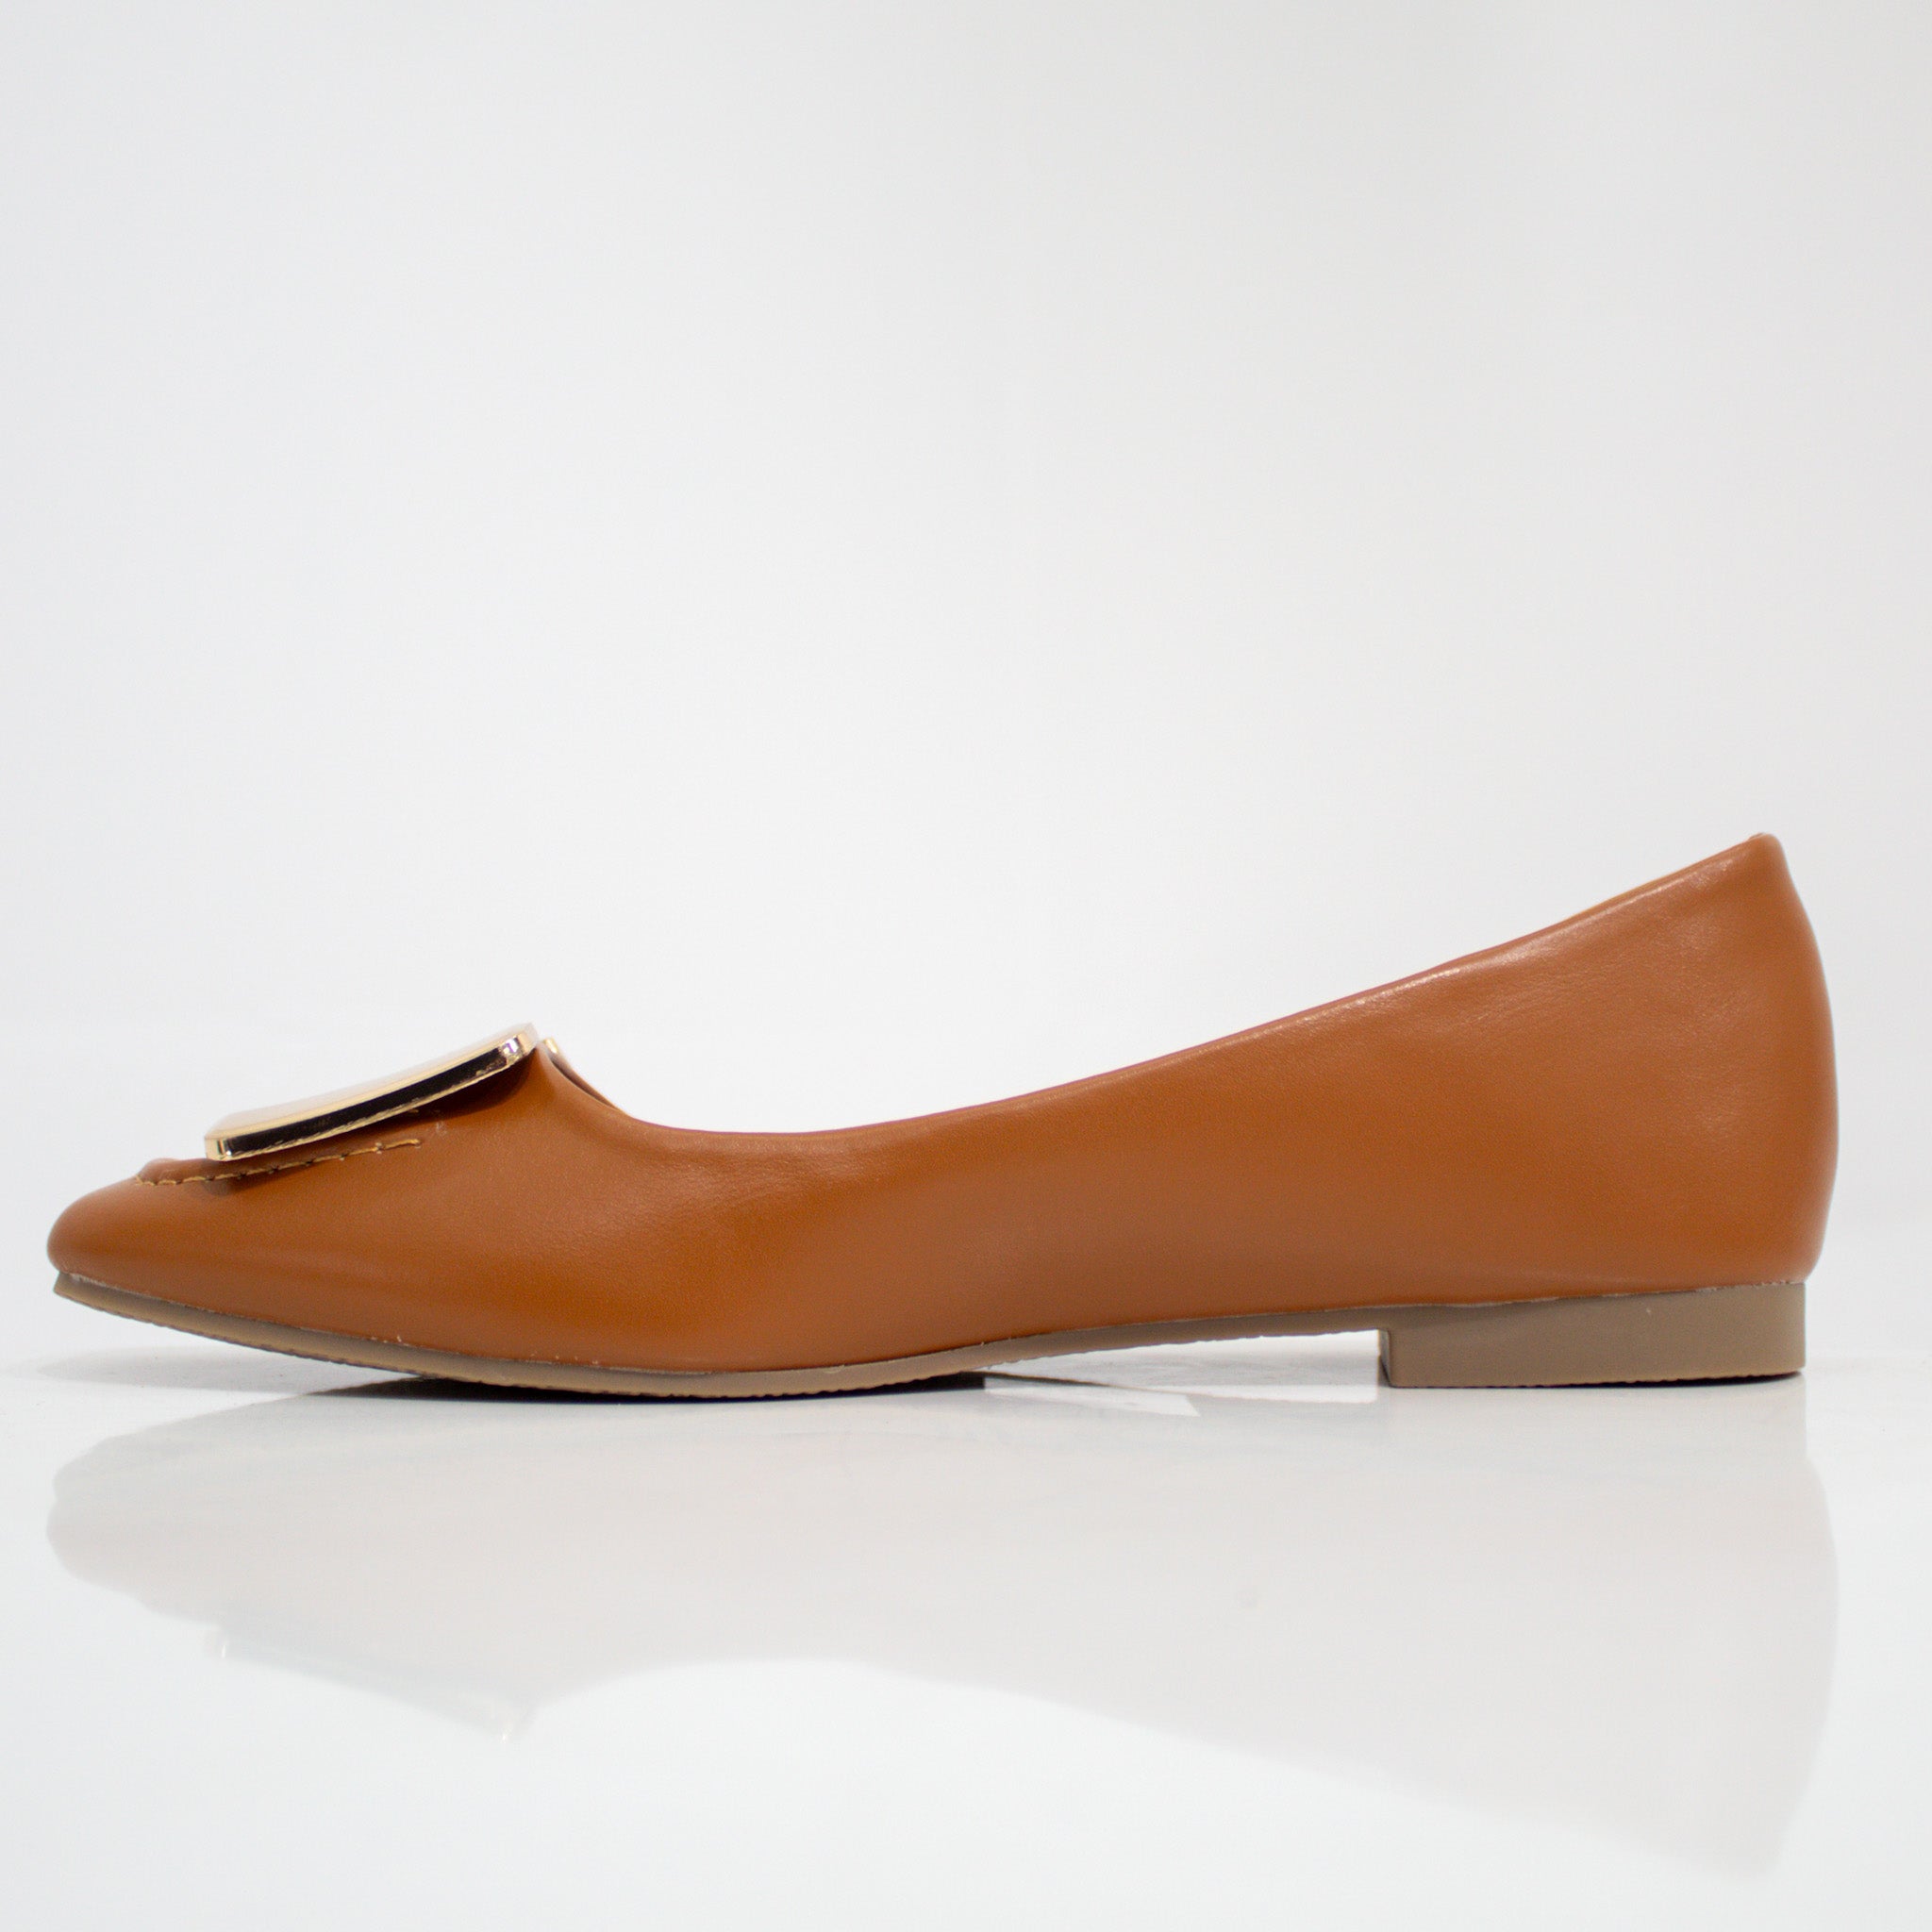 Brown gold H-trim faux leather pump shoes alvira